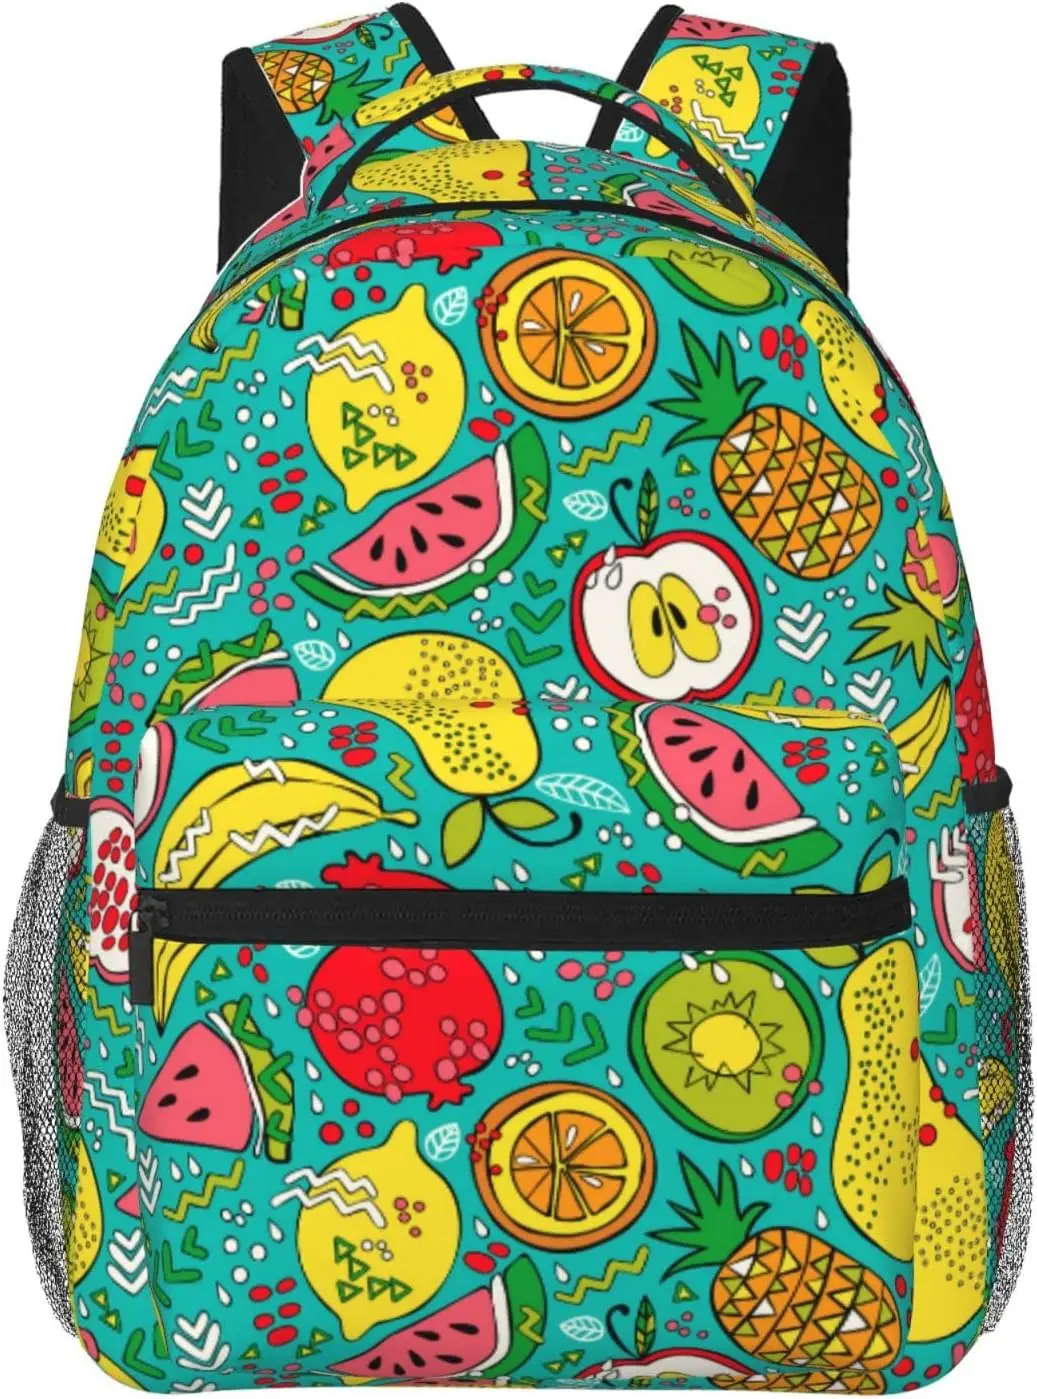 

Pineapple Lemon Fruit Lightweight Laptop Backpack for Women Men College Bookbag Casual Daypack Travel Bag